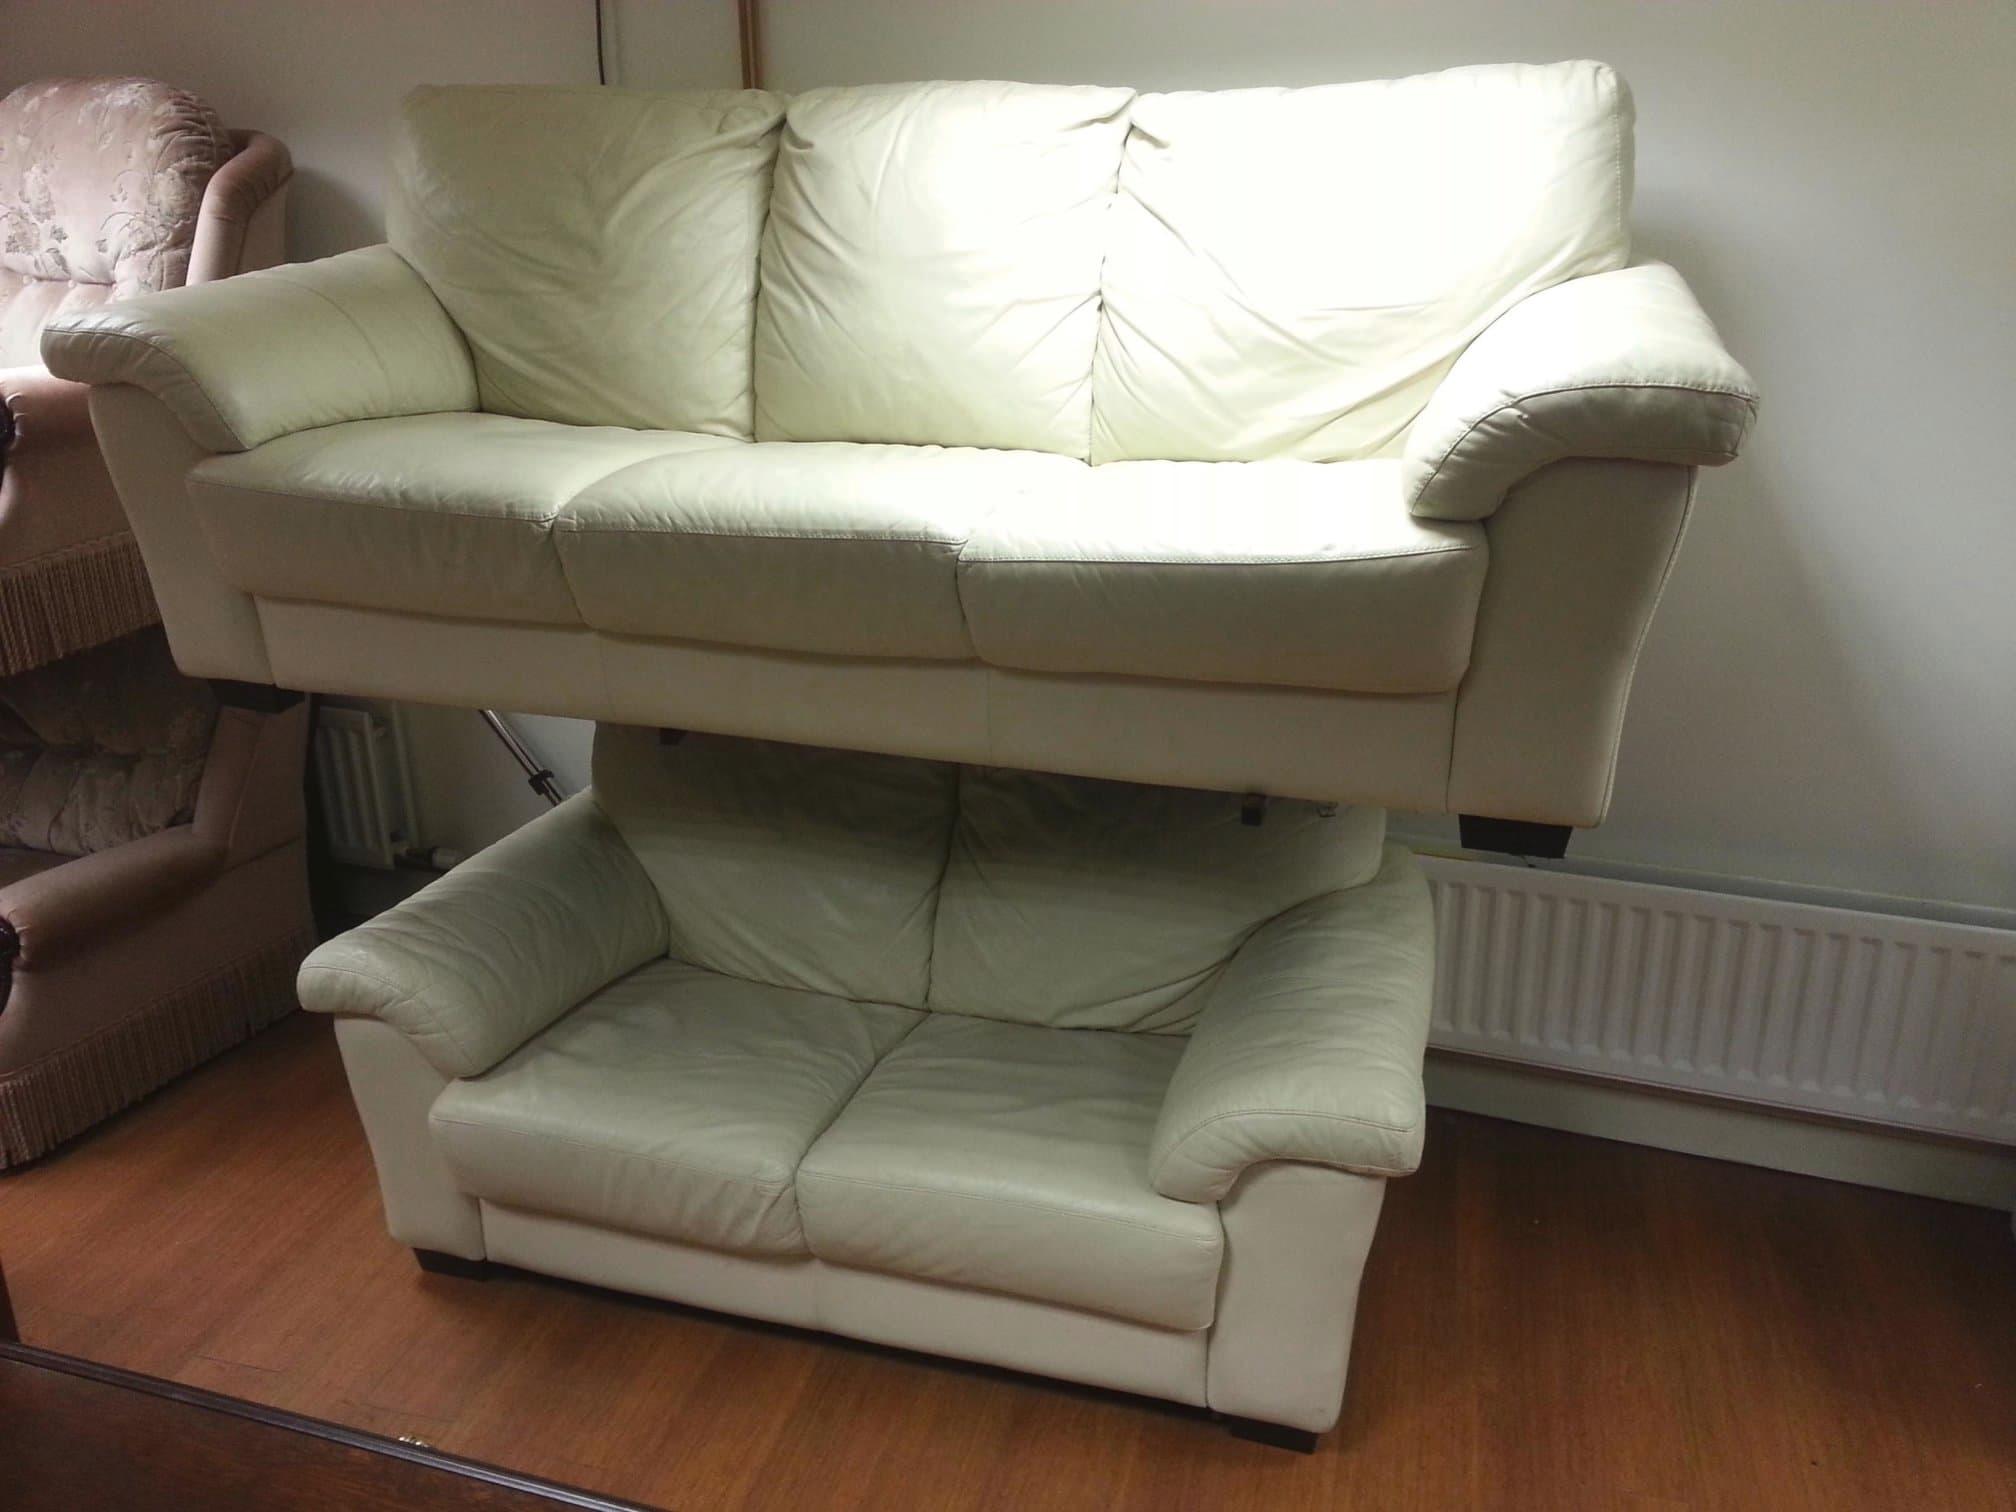 The Ormeau Road Furniture Co Belfast 07596 500830